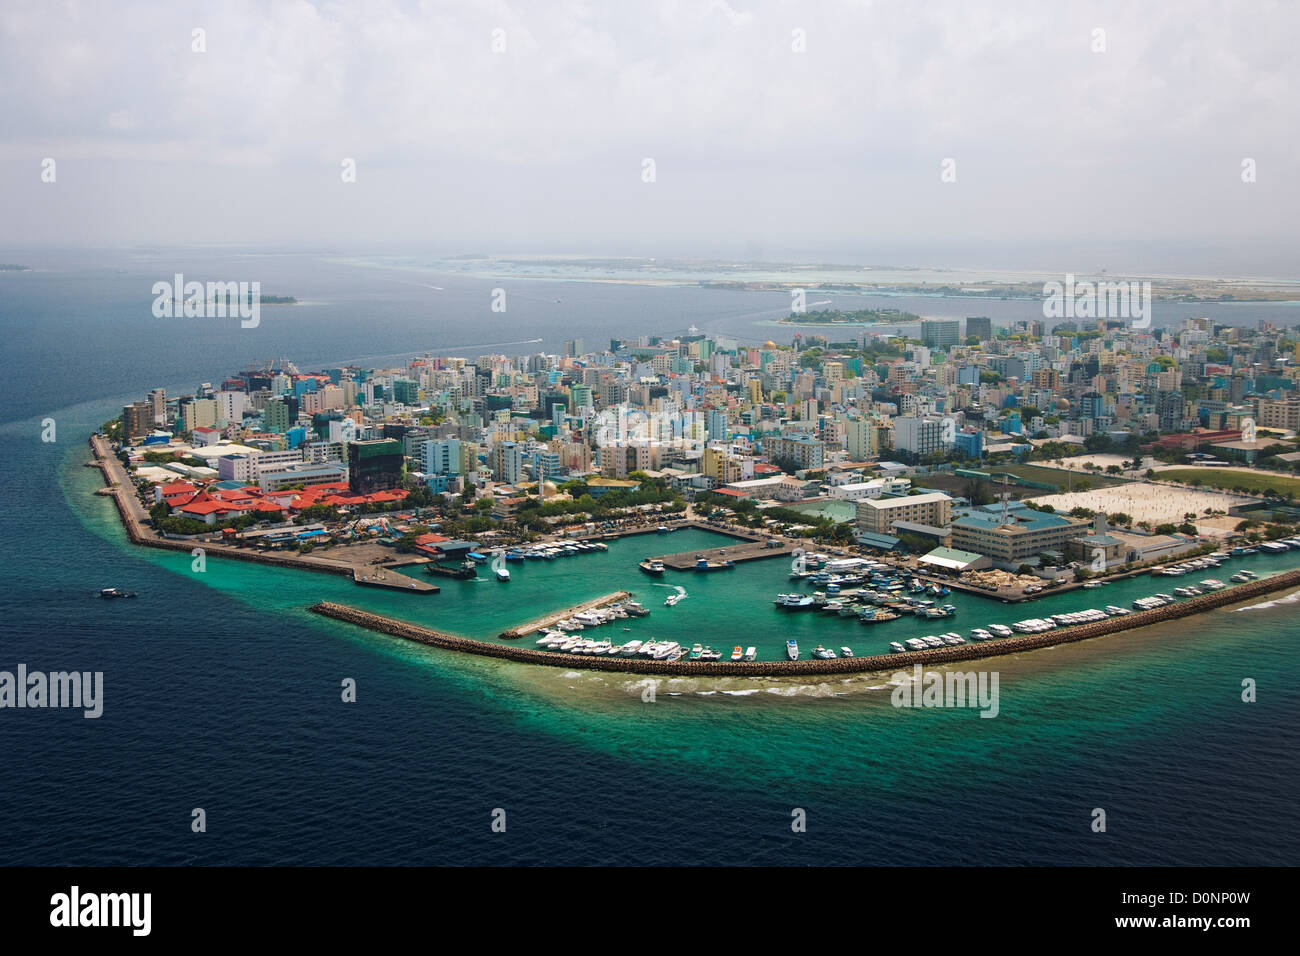 Male город. Город Мале Мальдивы. Столица Мальдив - город Мале.. Мальдивы остров Мале фото. Мале столица Мальдив фото.